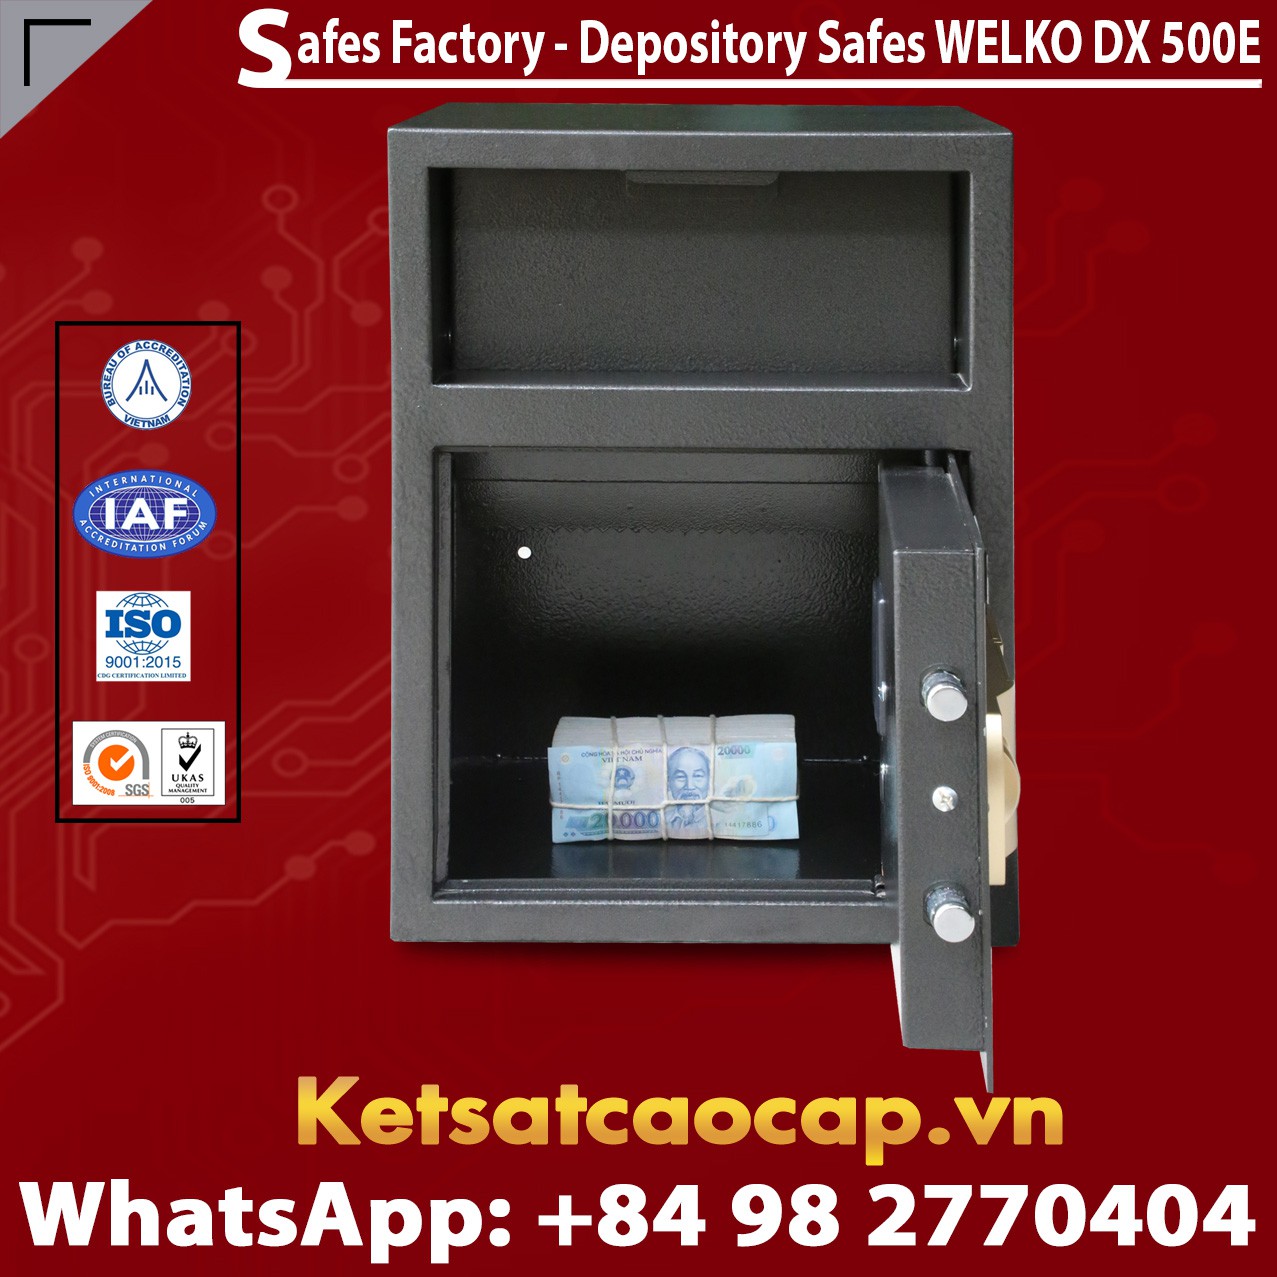 Office Safes Box High Quality Factory Price phân phối độc quyền chính hãng toàn quốc